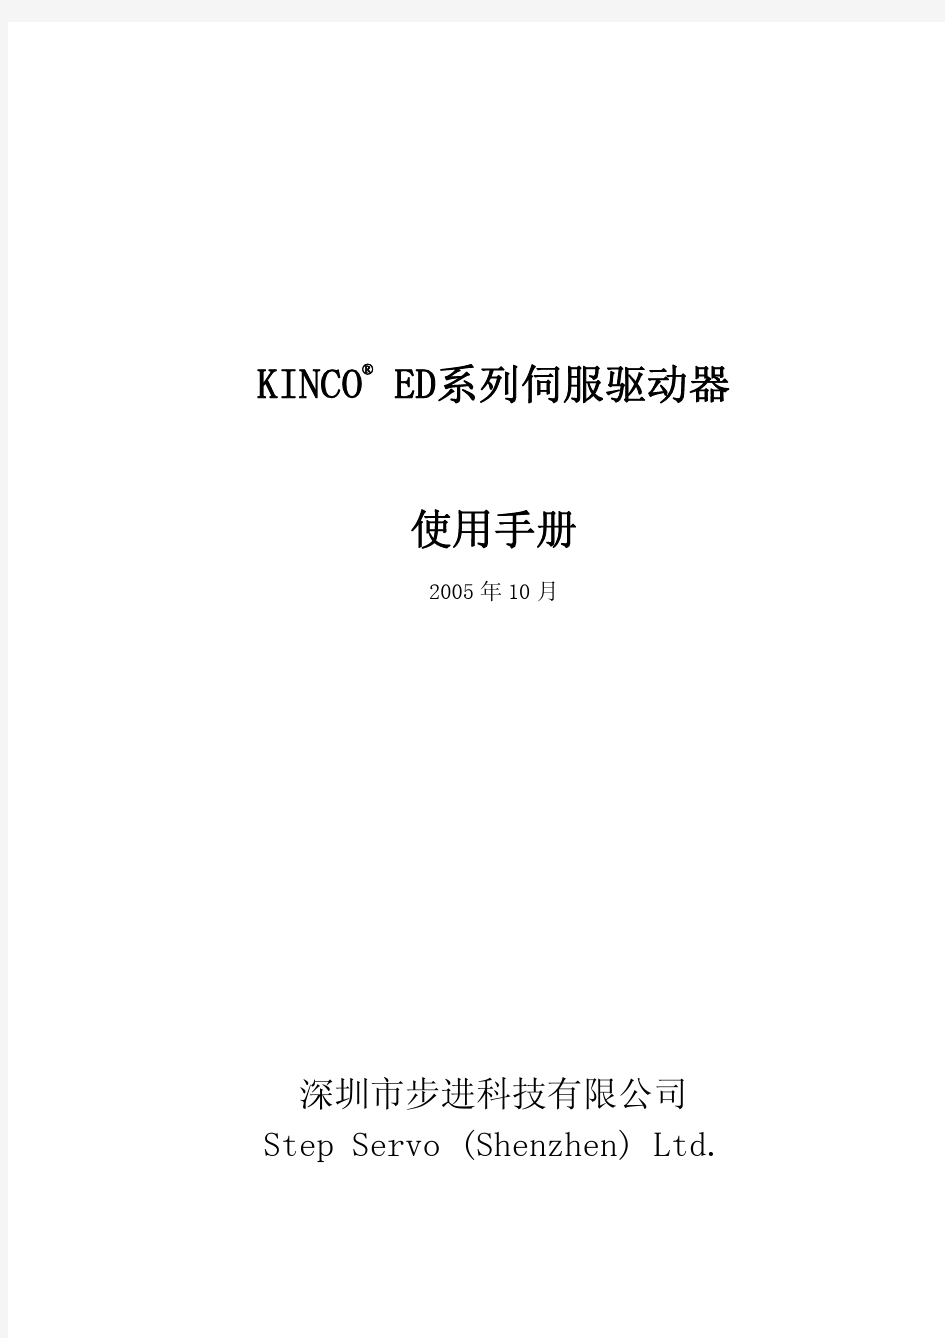 KINCO ED系列伺服驱动器使用手册